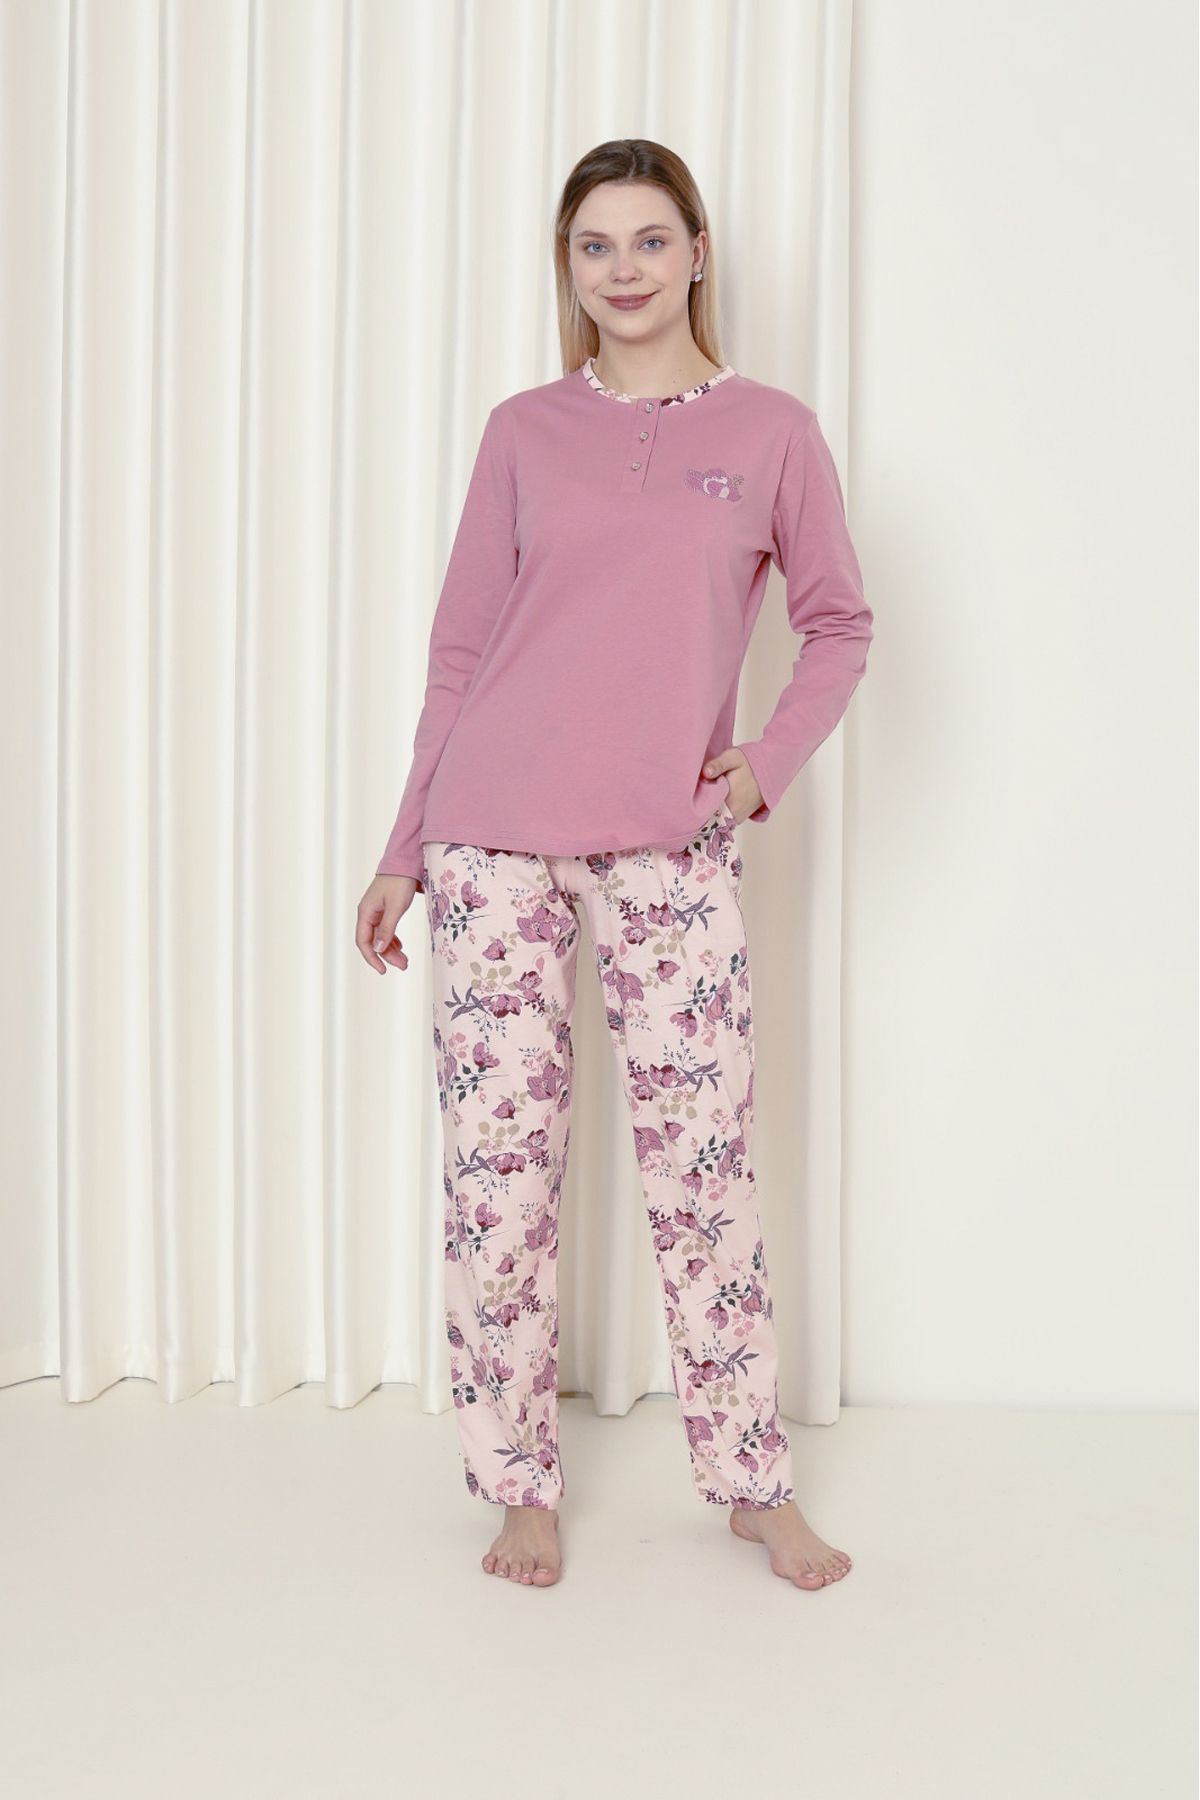 AHENGİM Woman Kadın Pijama Takımı Süprem Uzun Kol Çiçekli Pamuklu Mevsimlik W20242241